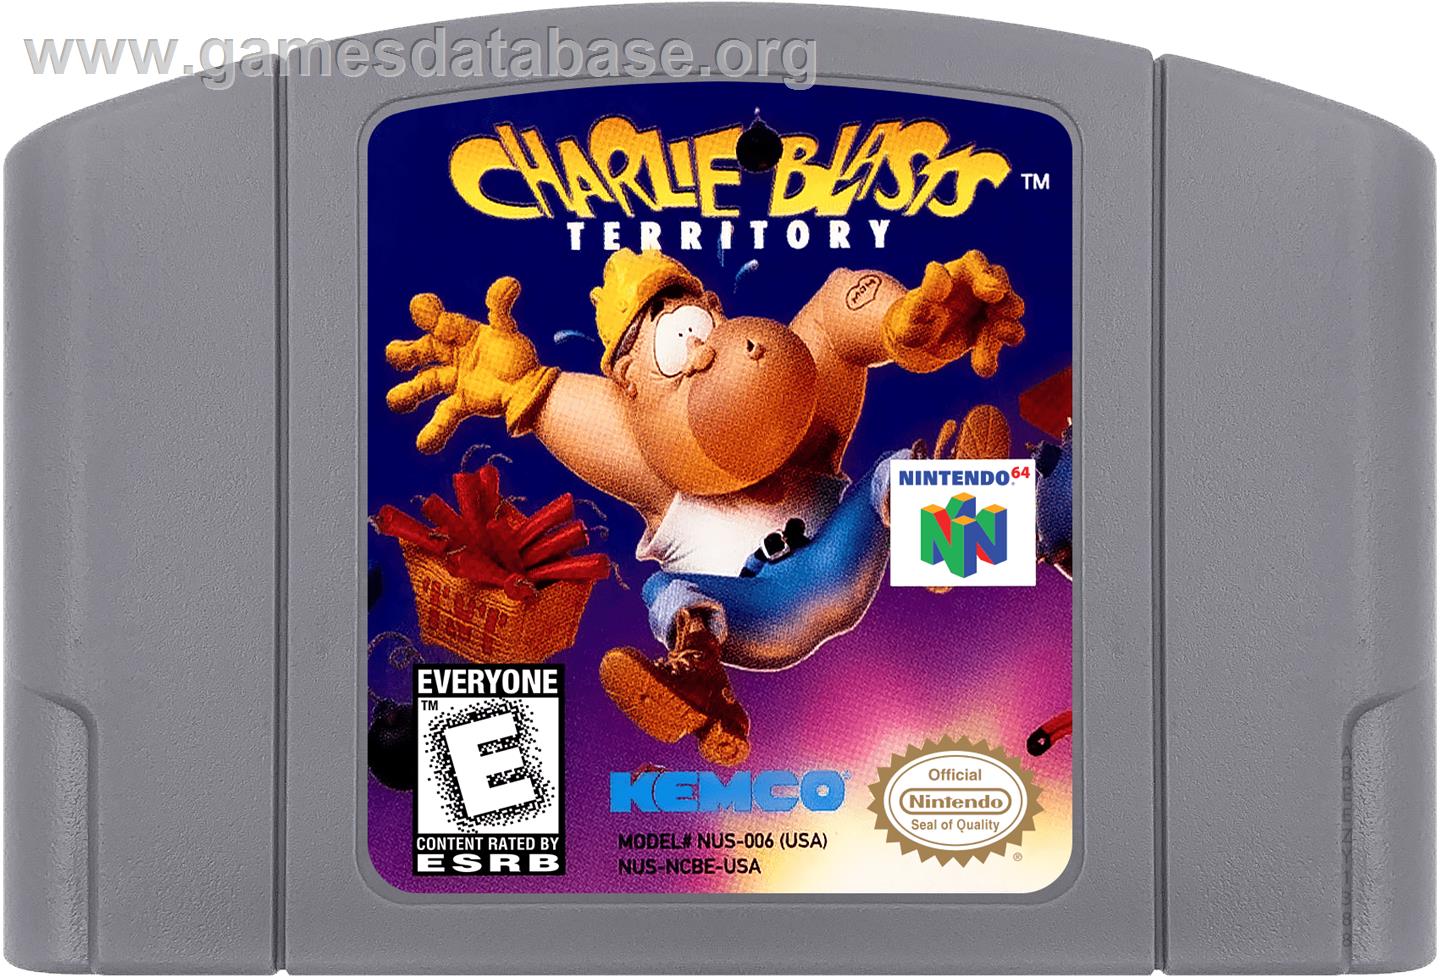 Charlie Blast's Territory - Nintendo N64 - Artwork - Cartridge